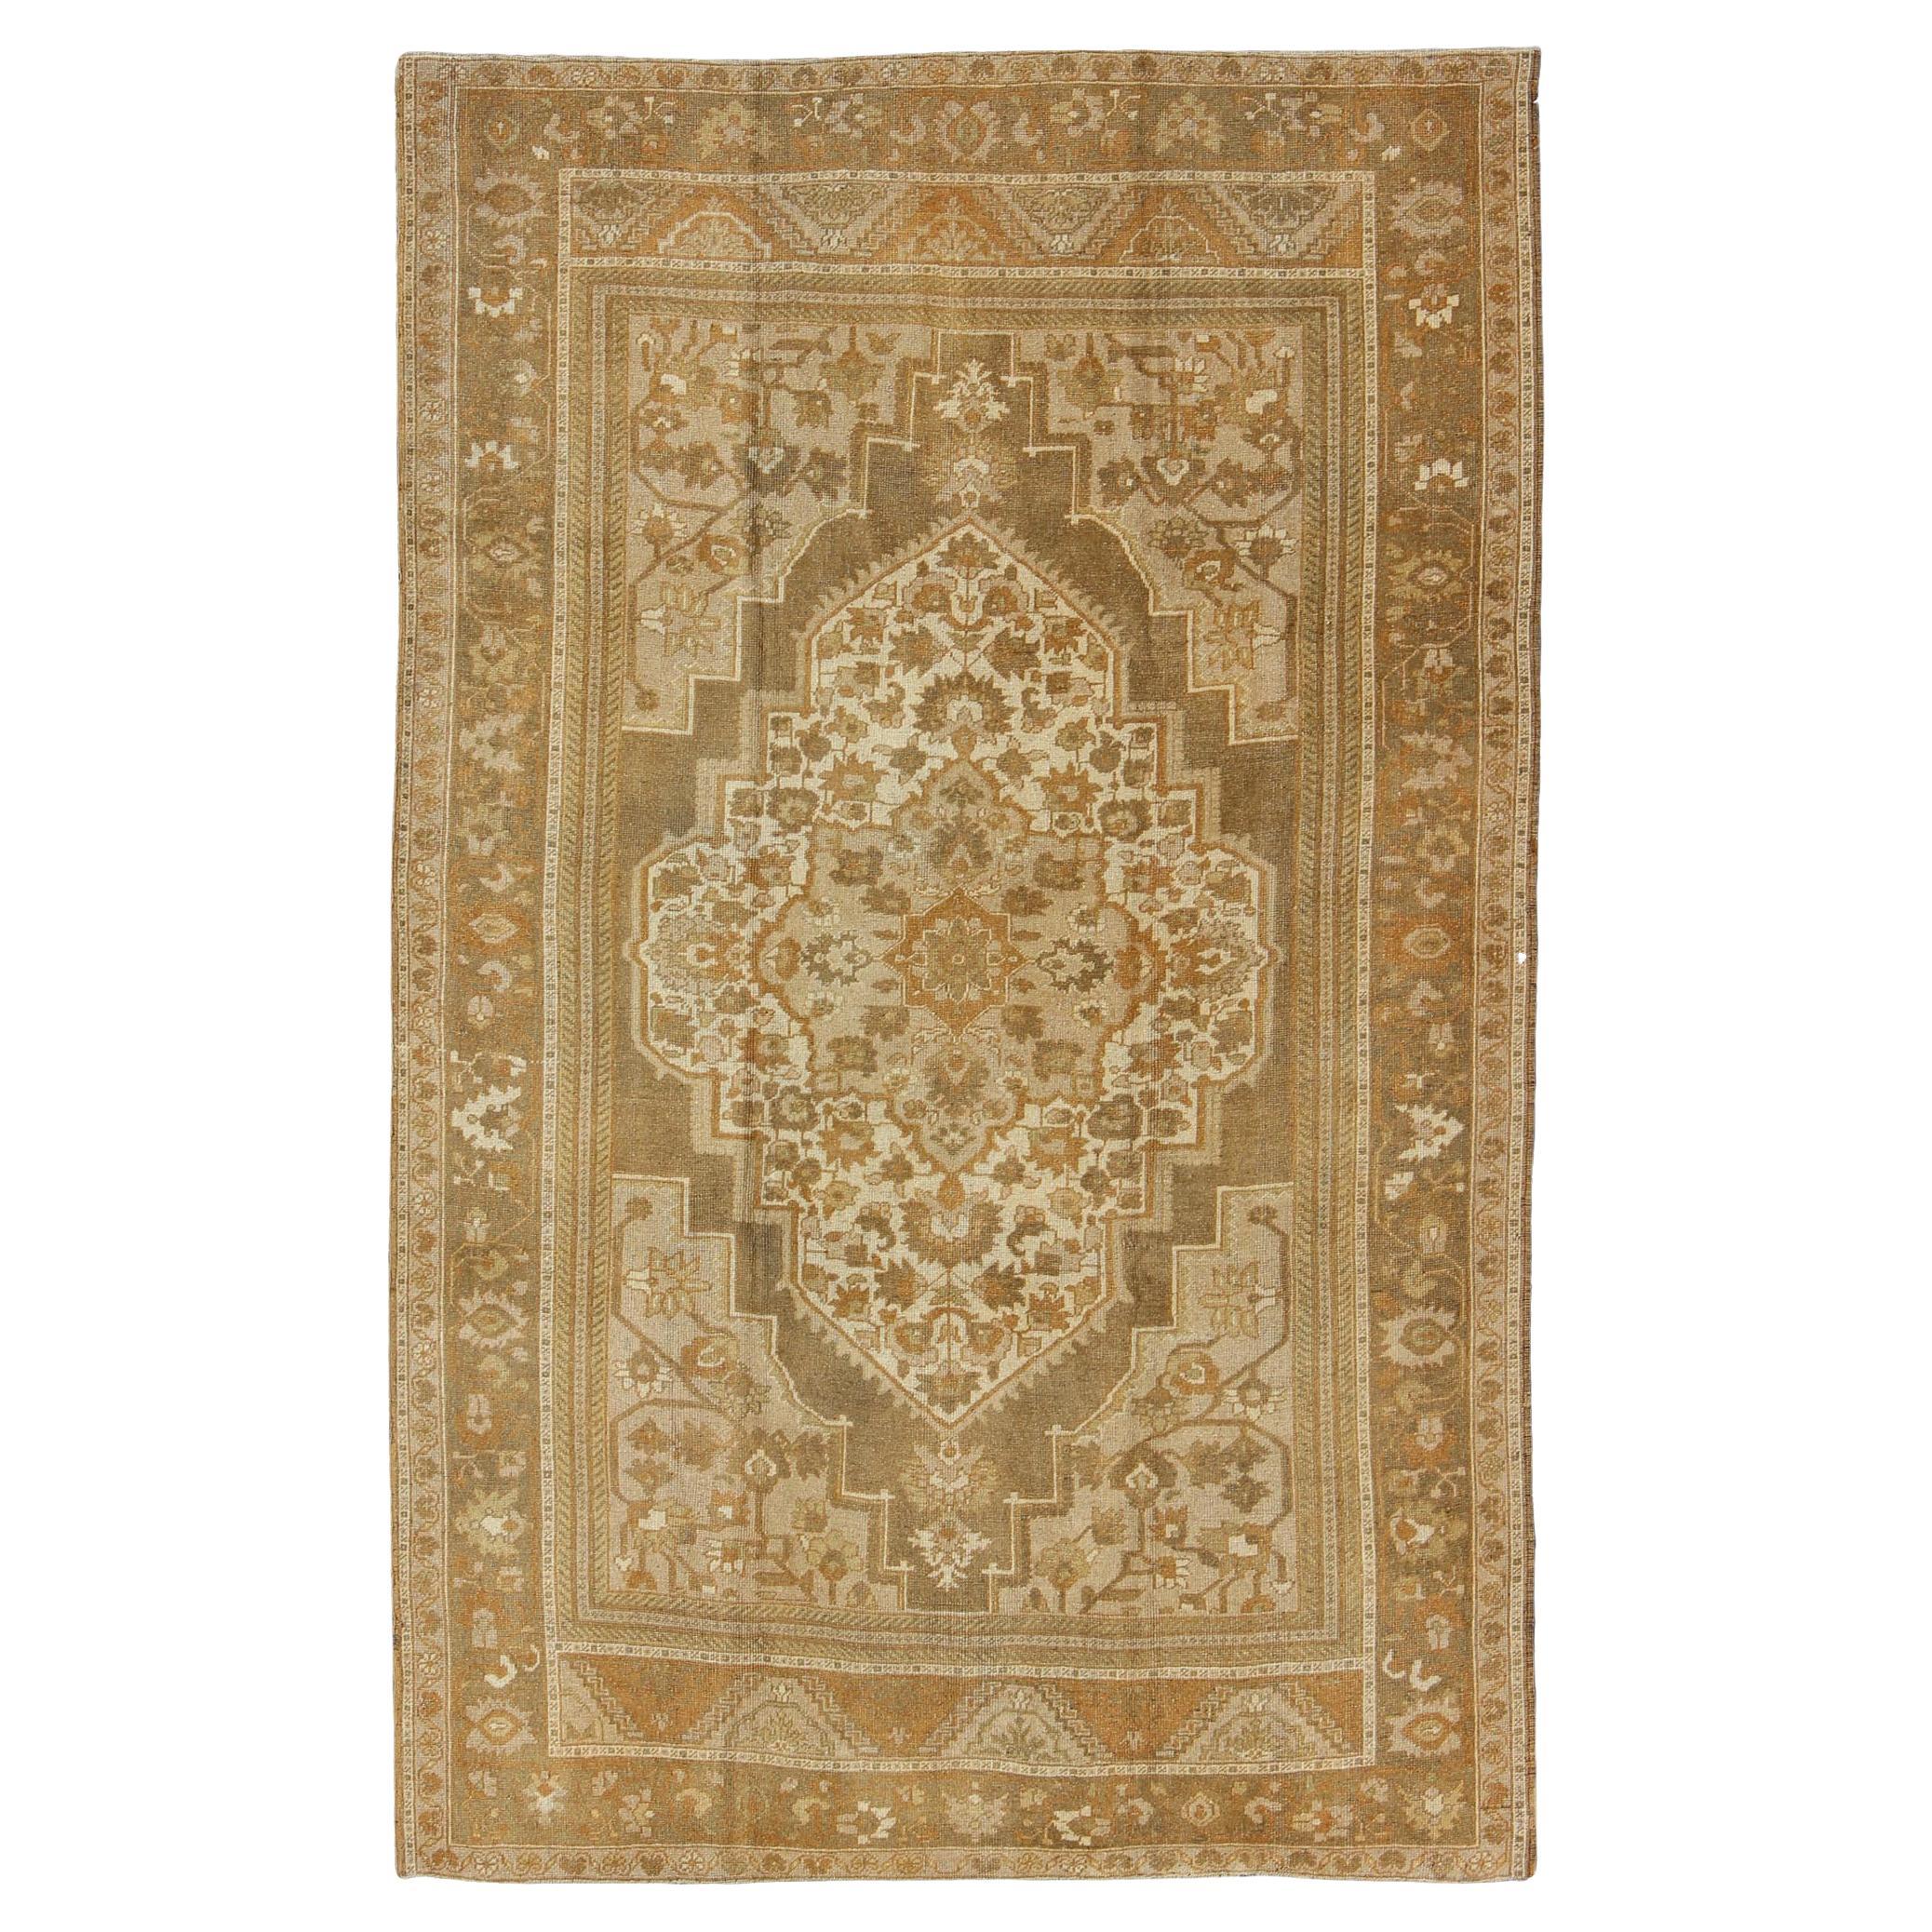 Türkischer Oushak-Teppich mit elfenbeinfarbenem, hellbraunem, geblümtem Medaillonmuster, Vintage